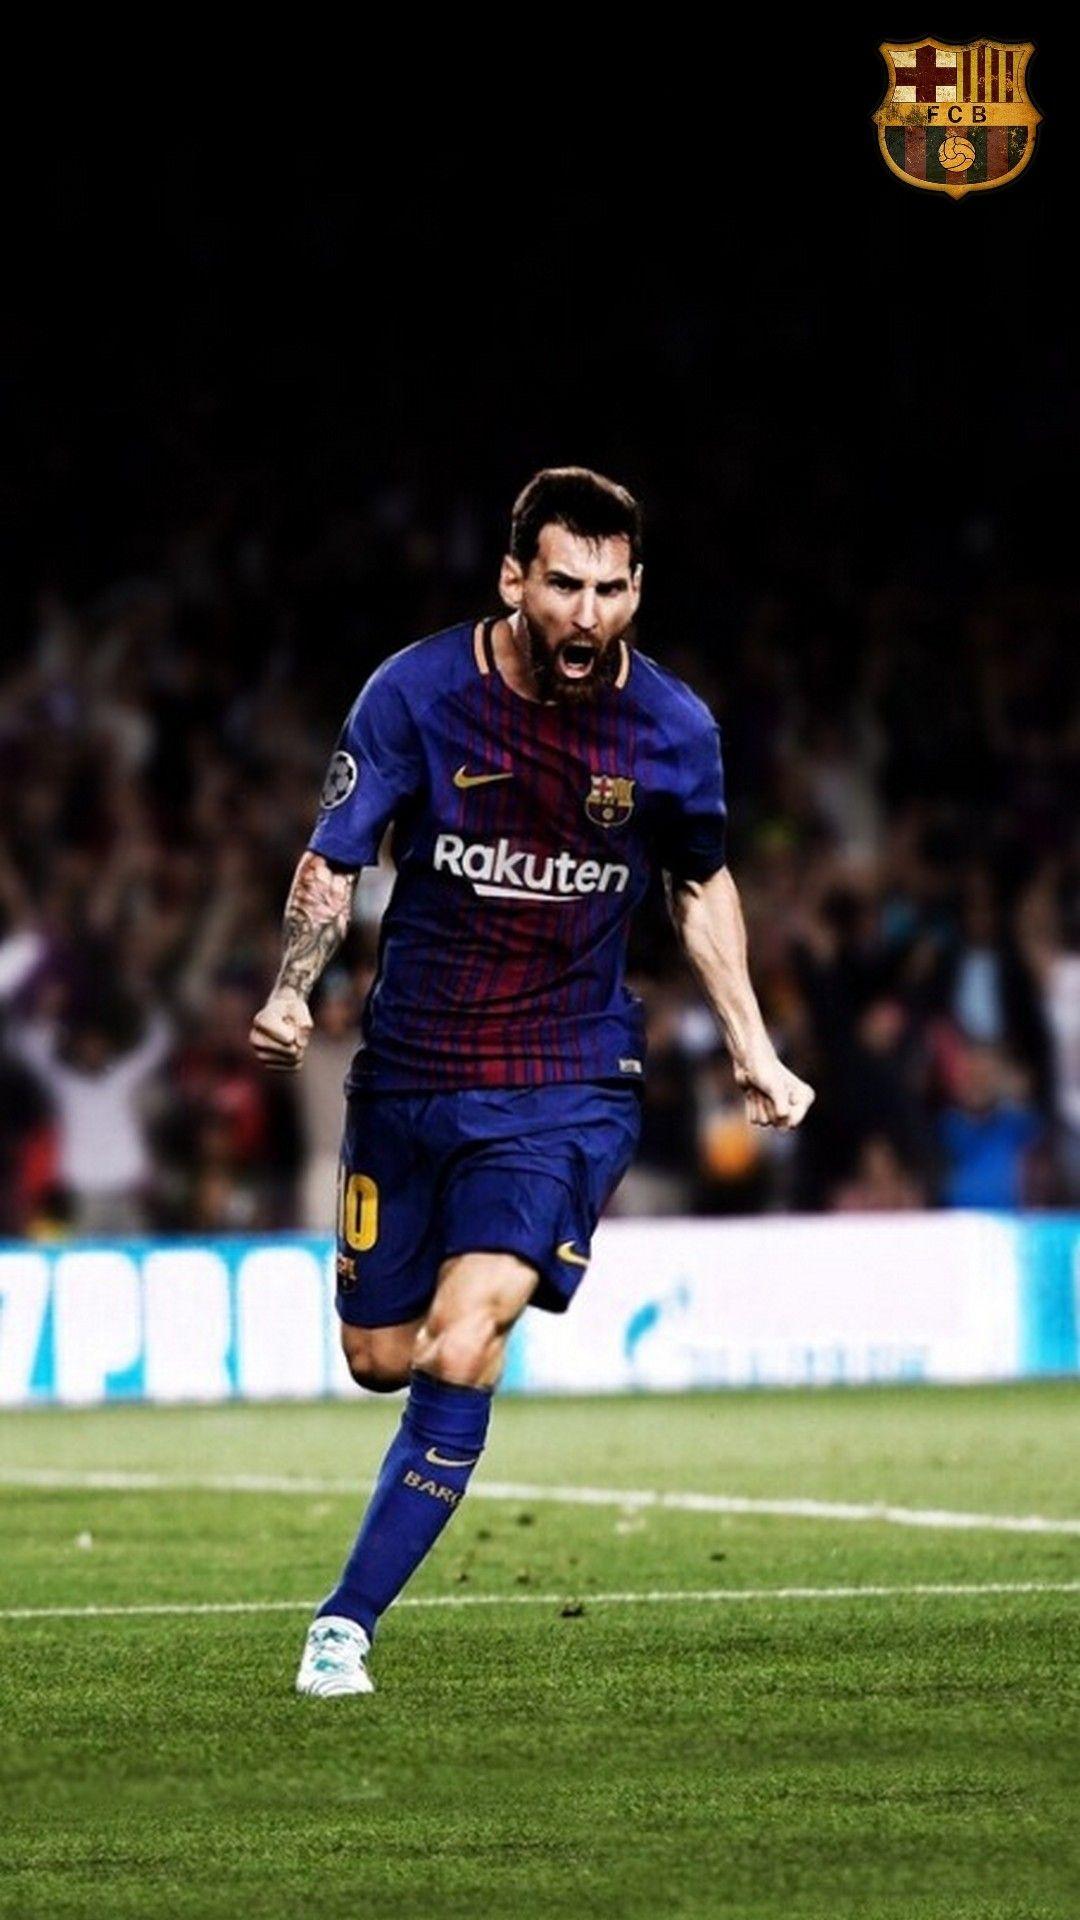 Hình ảnh Messi iPhone - Hãy chiêm ngưỡng những hình ảnh của siêu sao bóng đá hàng đầu Lionel Messi trên điện thoại iPhone của bạn. Với chất lượng hình ảnh tuyệt đẹp, bạn sẽ không thể rời mắt khỏi những khoảnh khắc đẹp như tranh của anh chàng.